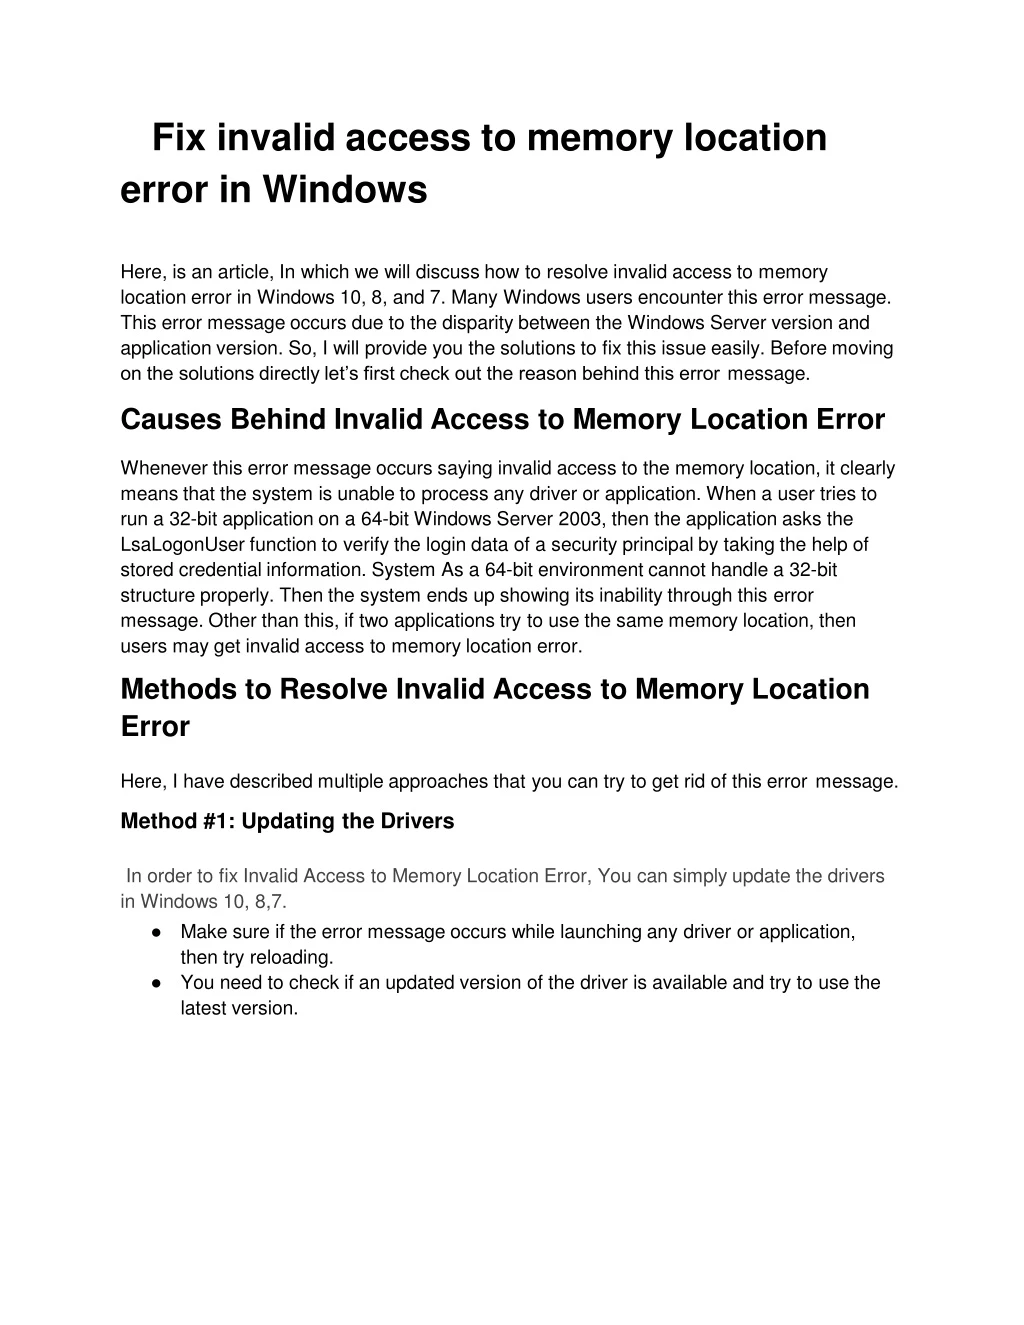 fix invalid access to memory location error in windows